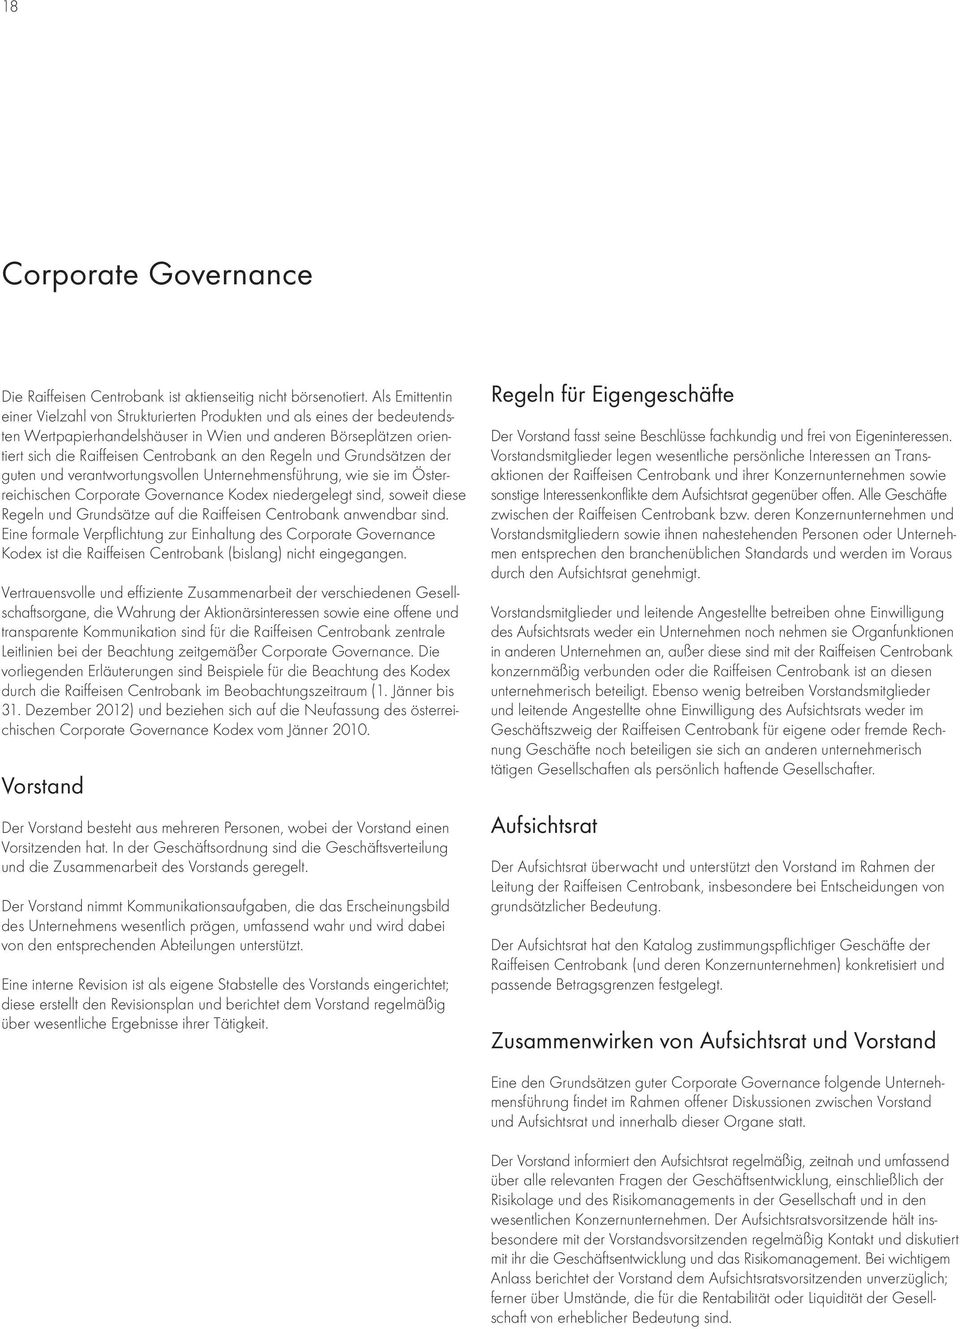 Regeln und Grundsätzen der guten und verantwortungsvollen Unternehmensführung, wie sie im Österreichischen Corporate Governance Kodex niedergelegt sind, soweit diese Regeln und Grundsätze auf die